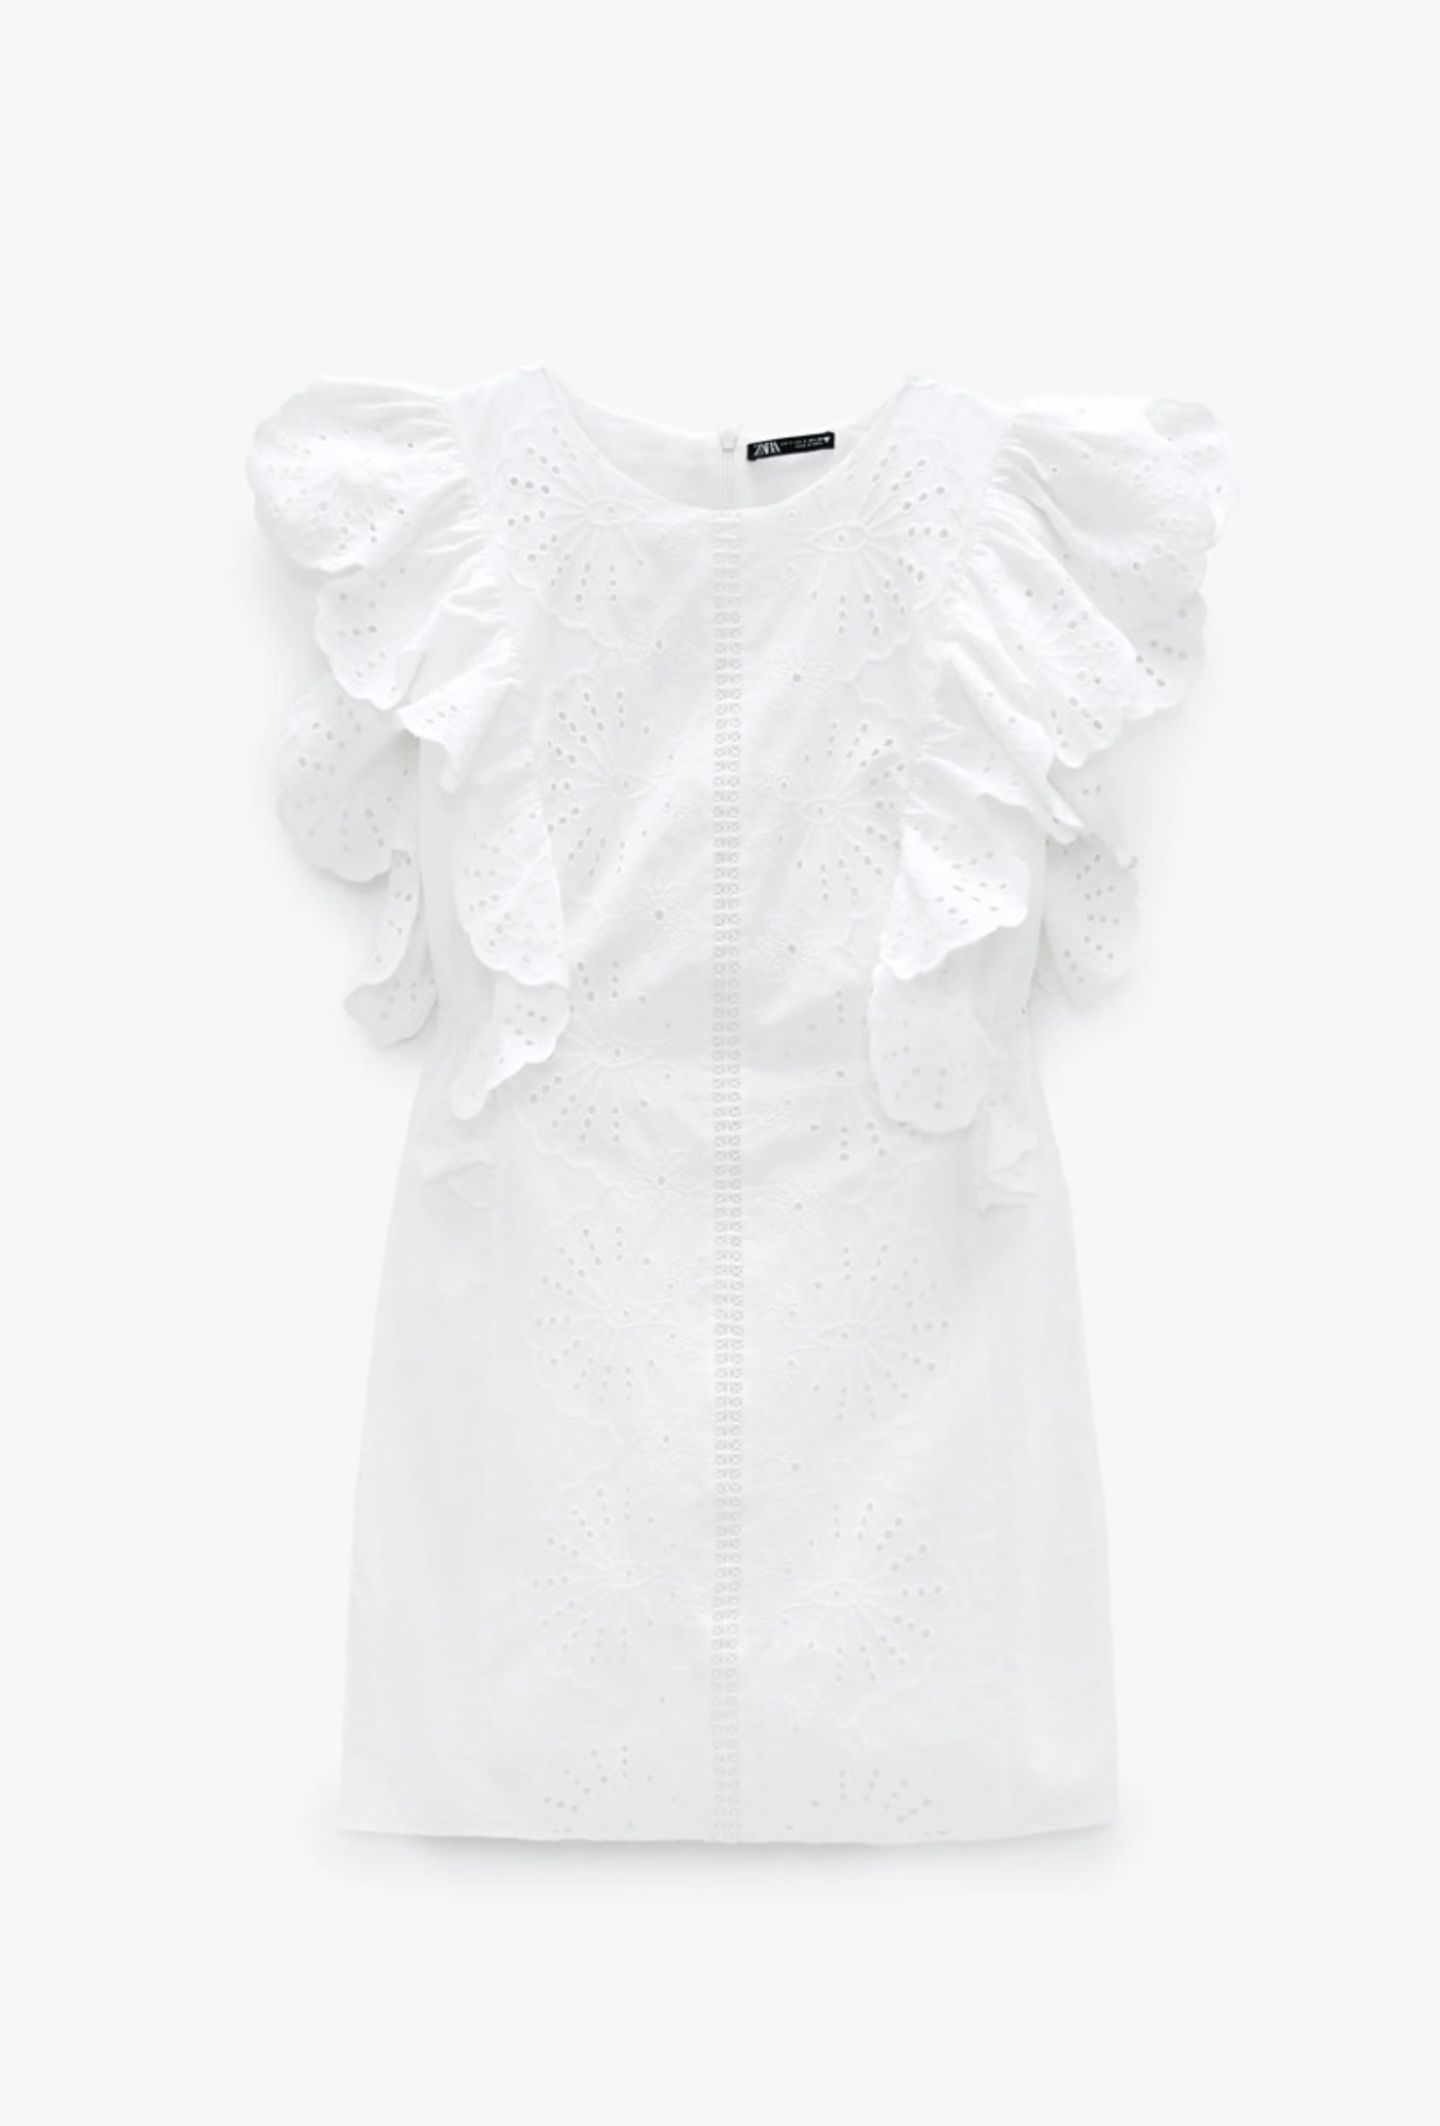 Süße Lochspitze, romantische Volants – hat noch jemand Zweifel daran, dass dieses Kleid der perfekte Look für den Sommer ist? Also wir sind längst überzeugt ... Von Zara, um 13 Euro.